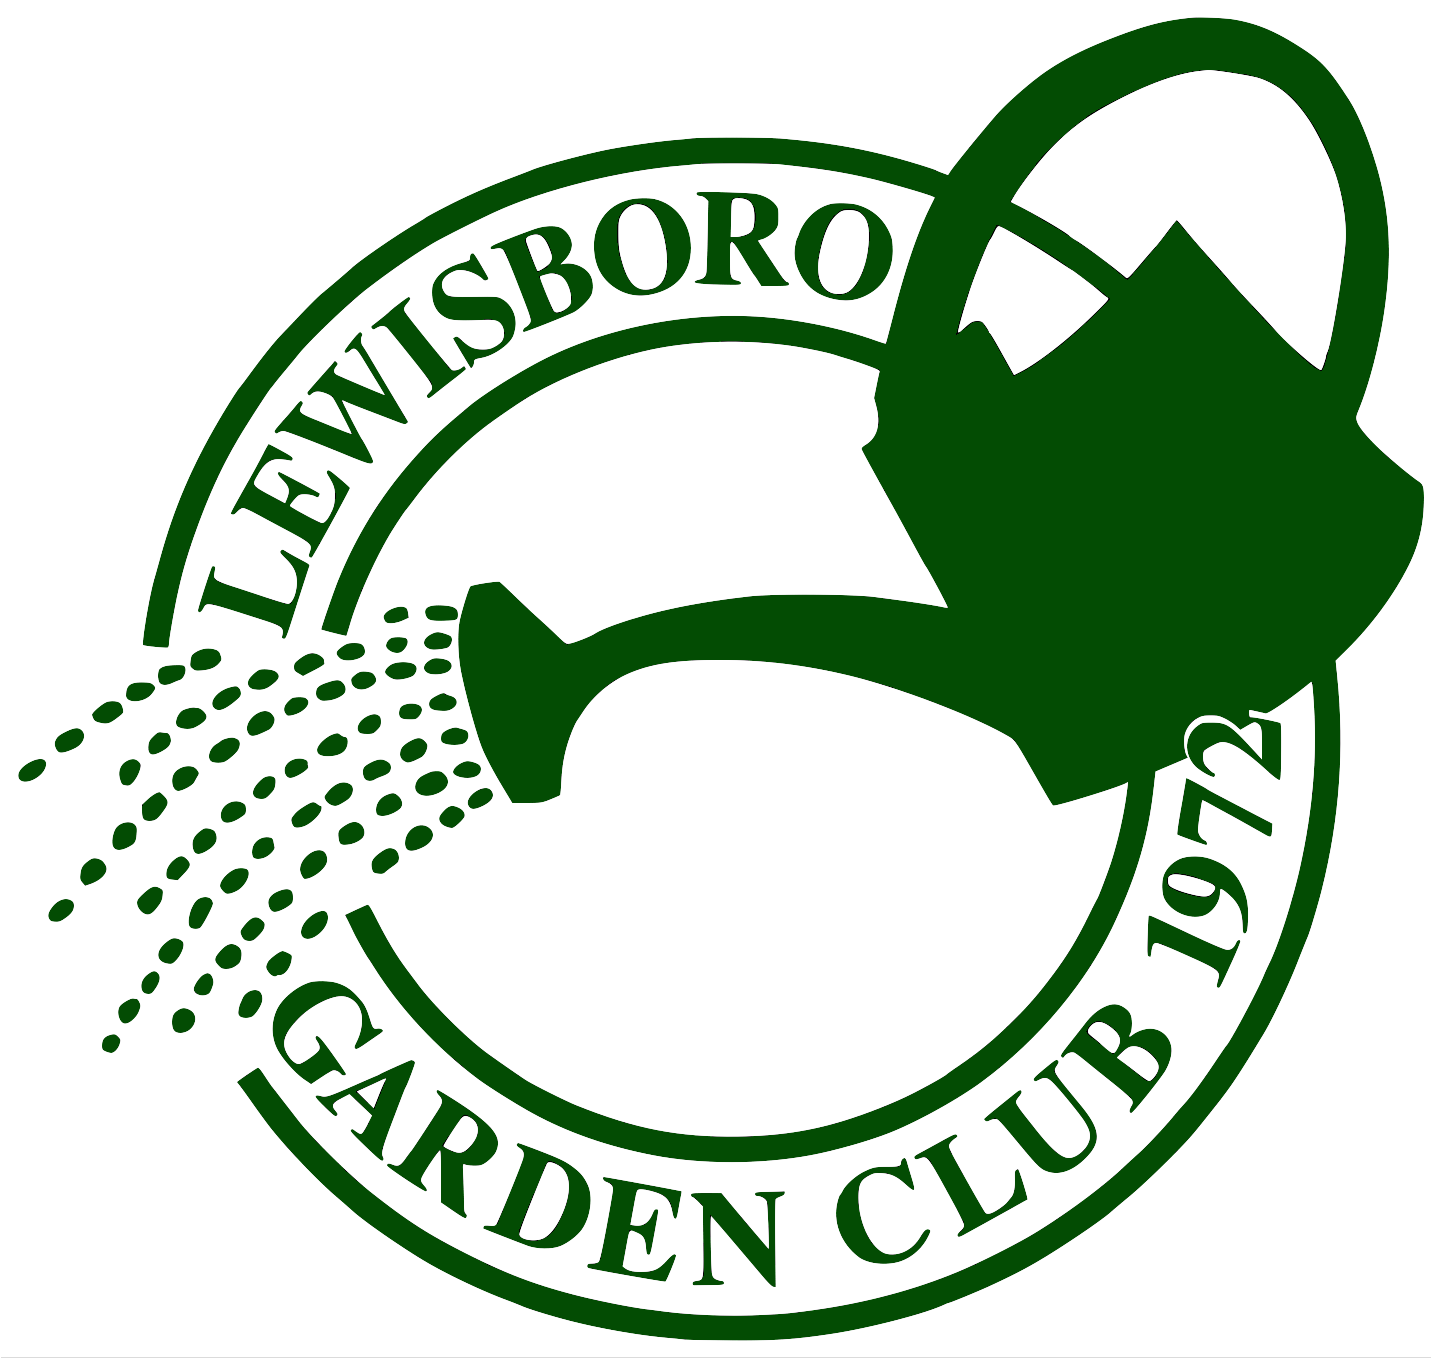 Lewisboro Garden Club